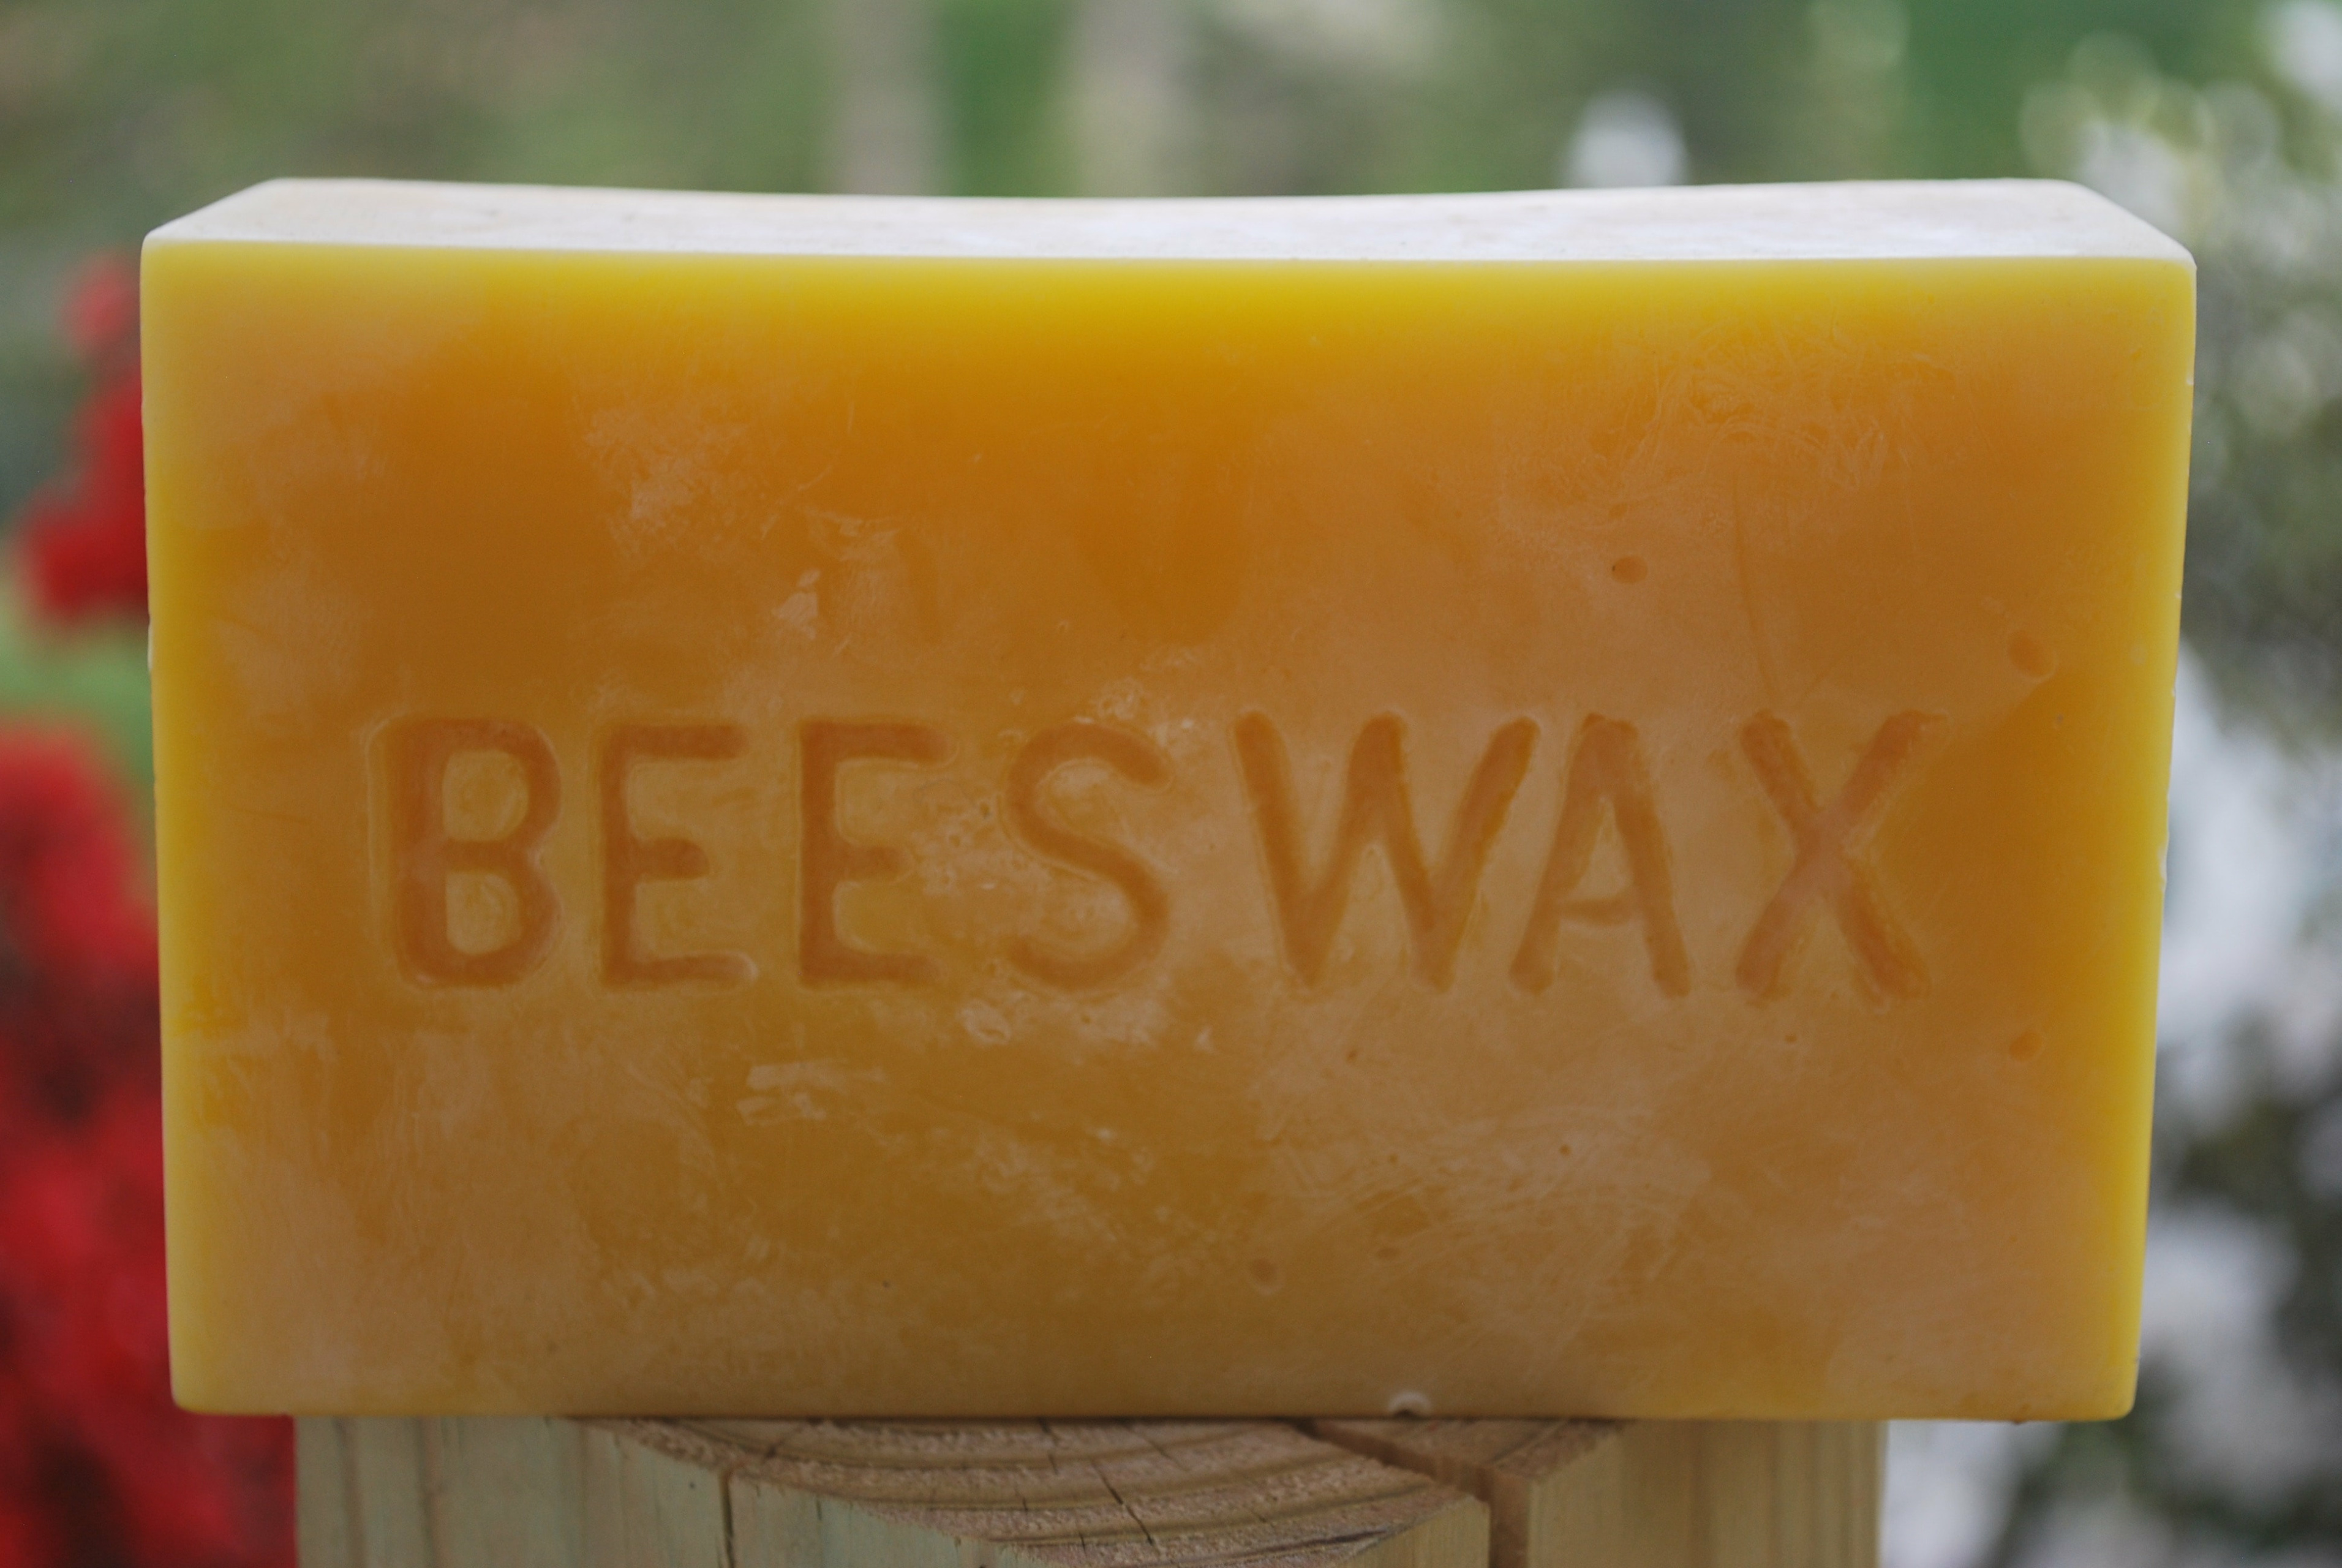 Beeswax bar 1lb - Store - Royal Alaskan Honey